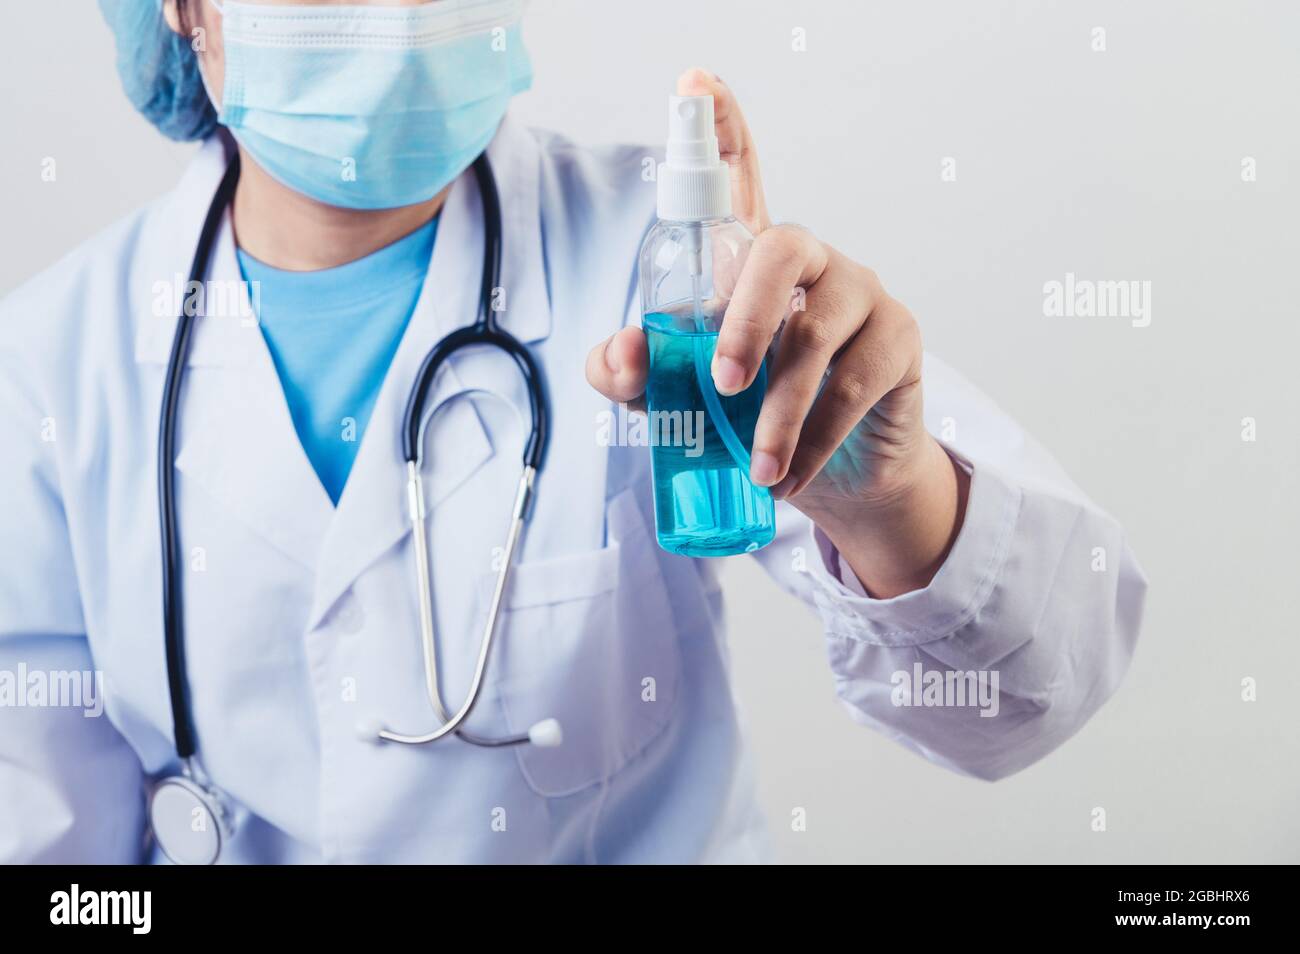 Il medico spray disinfettante per le mani o dispensatore di gel per pulire le mani e uccidere virus e batteri nell'aria dopo la visita dei pazienti. Persone di salute medica Foto Stock